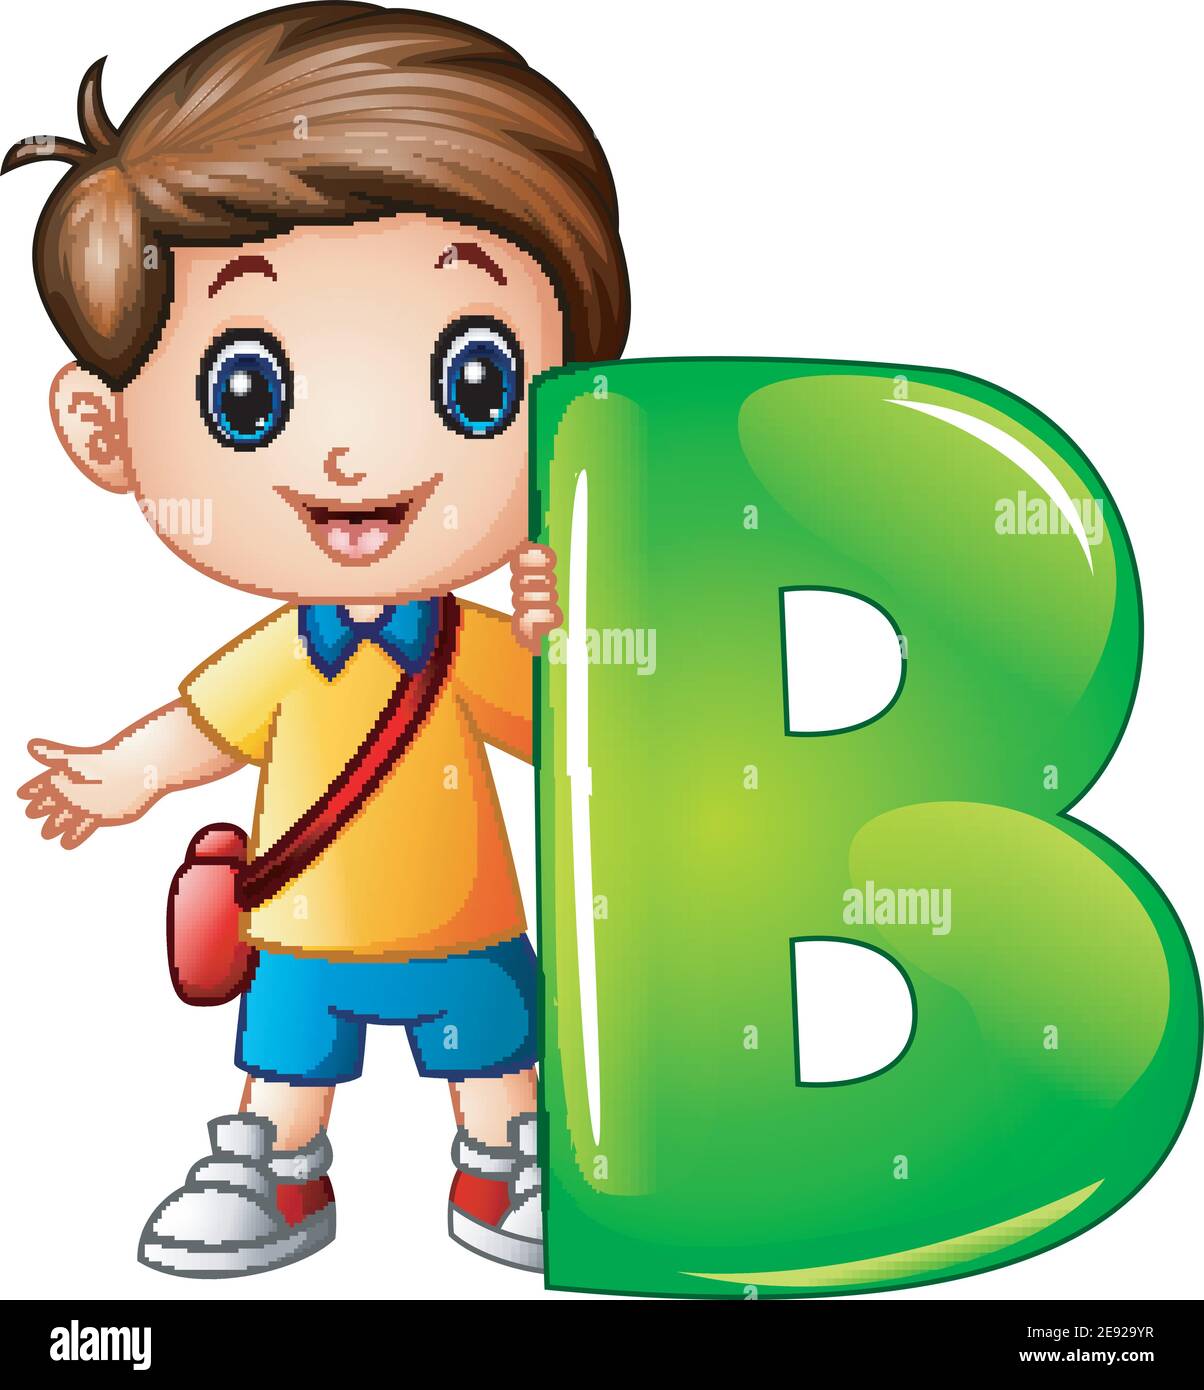 Vector illustration of Little boy holding letter B Stock Vector Image ...